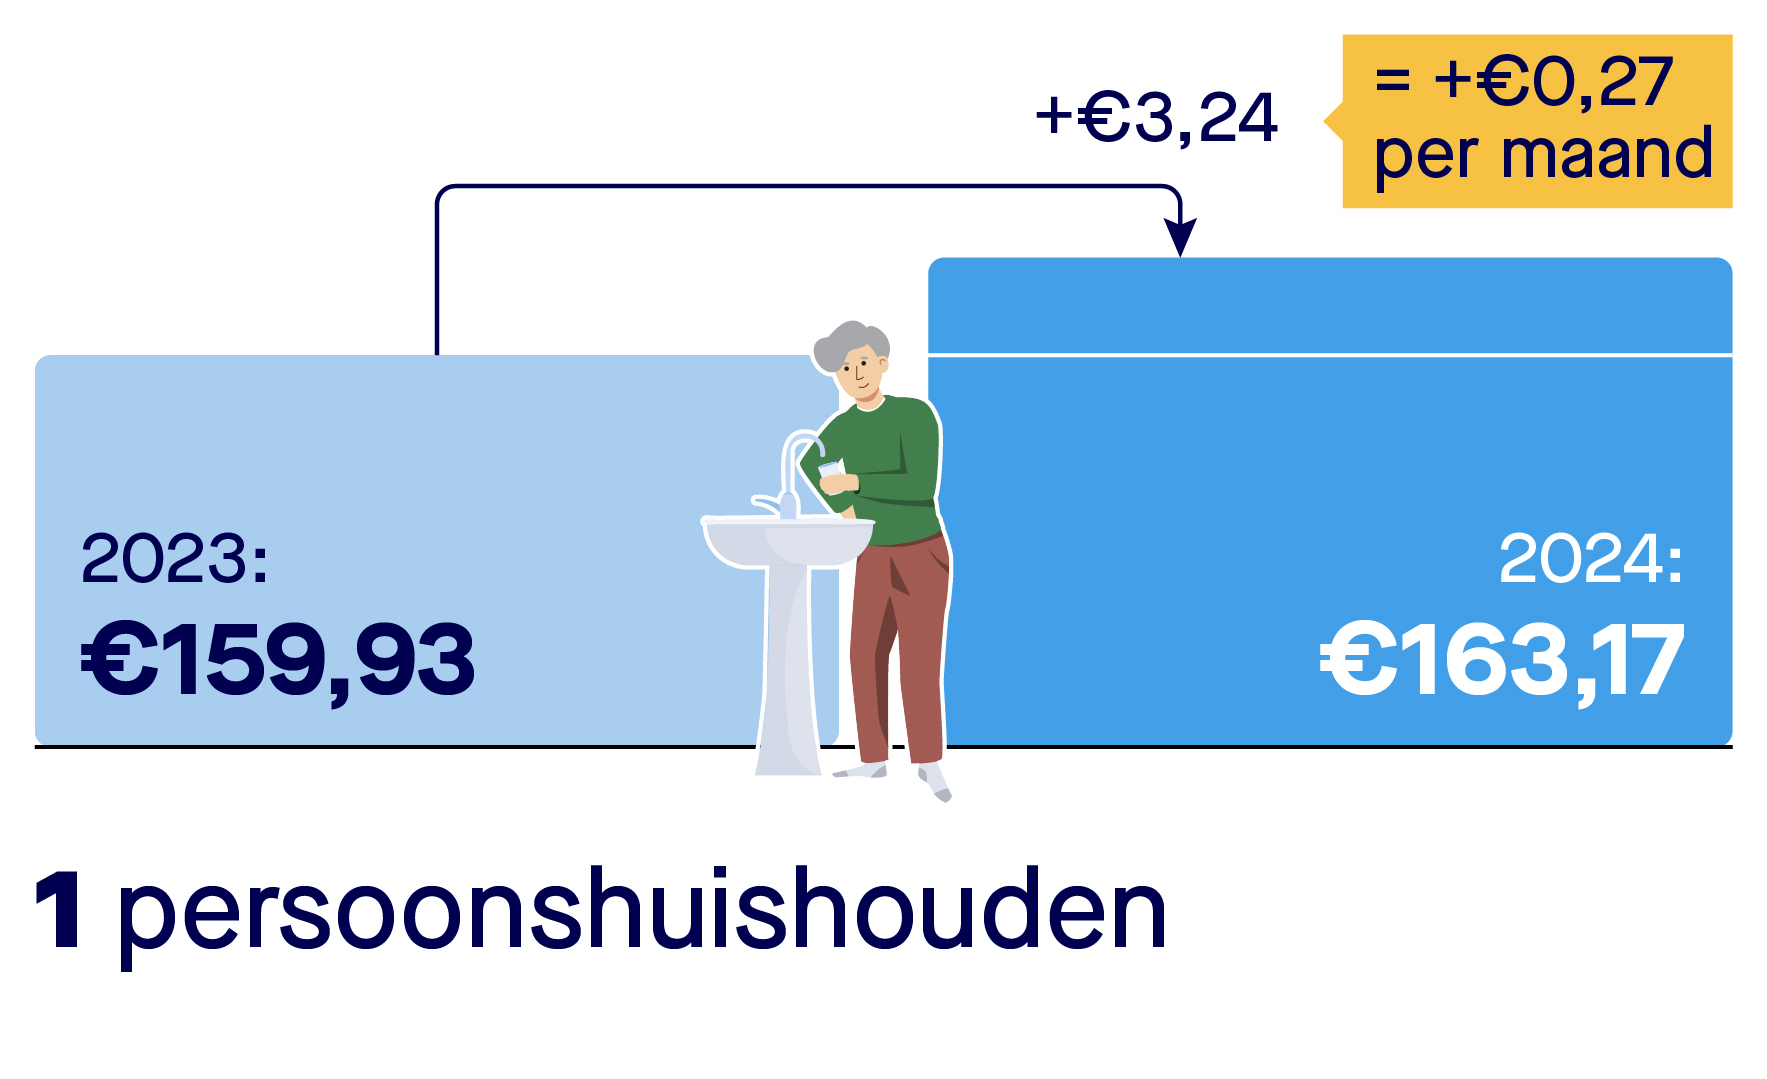 Rekenvoorbeeld stijging kosten drinkwater voor een eenpersoonshuishouden. Een eenpersoonshuishouden betaalde in 2023 159,93 euro voor drinkwater. In 2024 betaalt een eenpersoonshuishouden 163,17 euro per jaar. Dat is een stijging van 0,27 euro per maand. En van 3,24 euro per jaar.